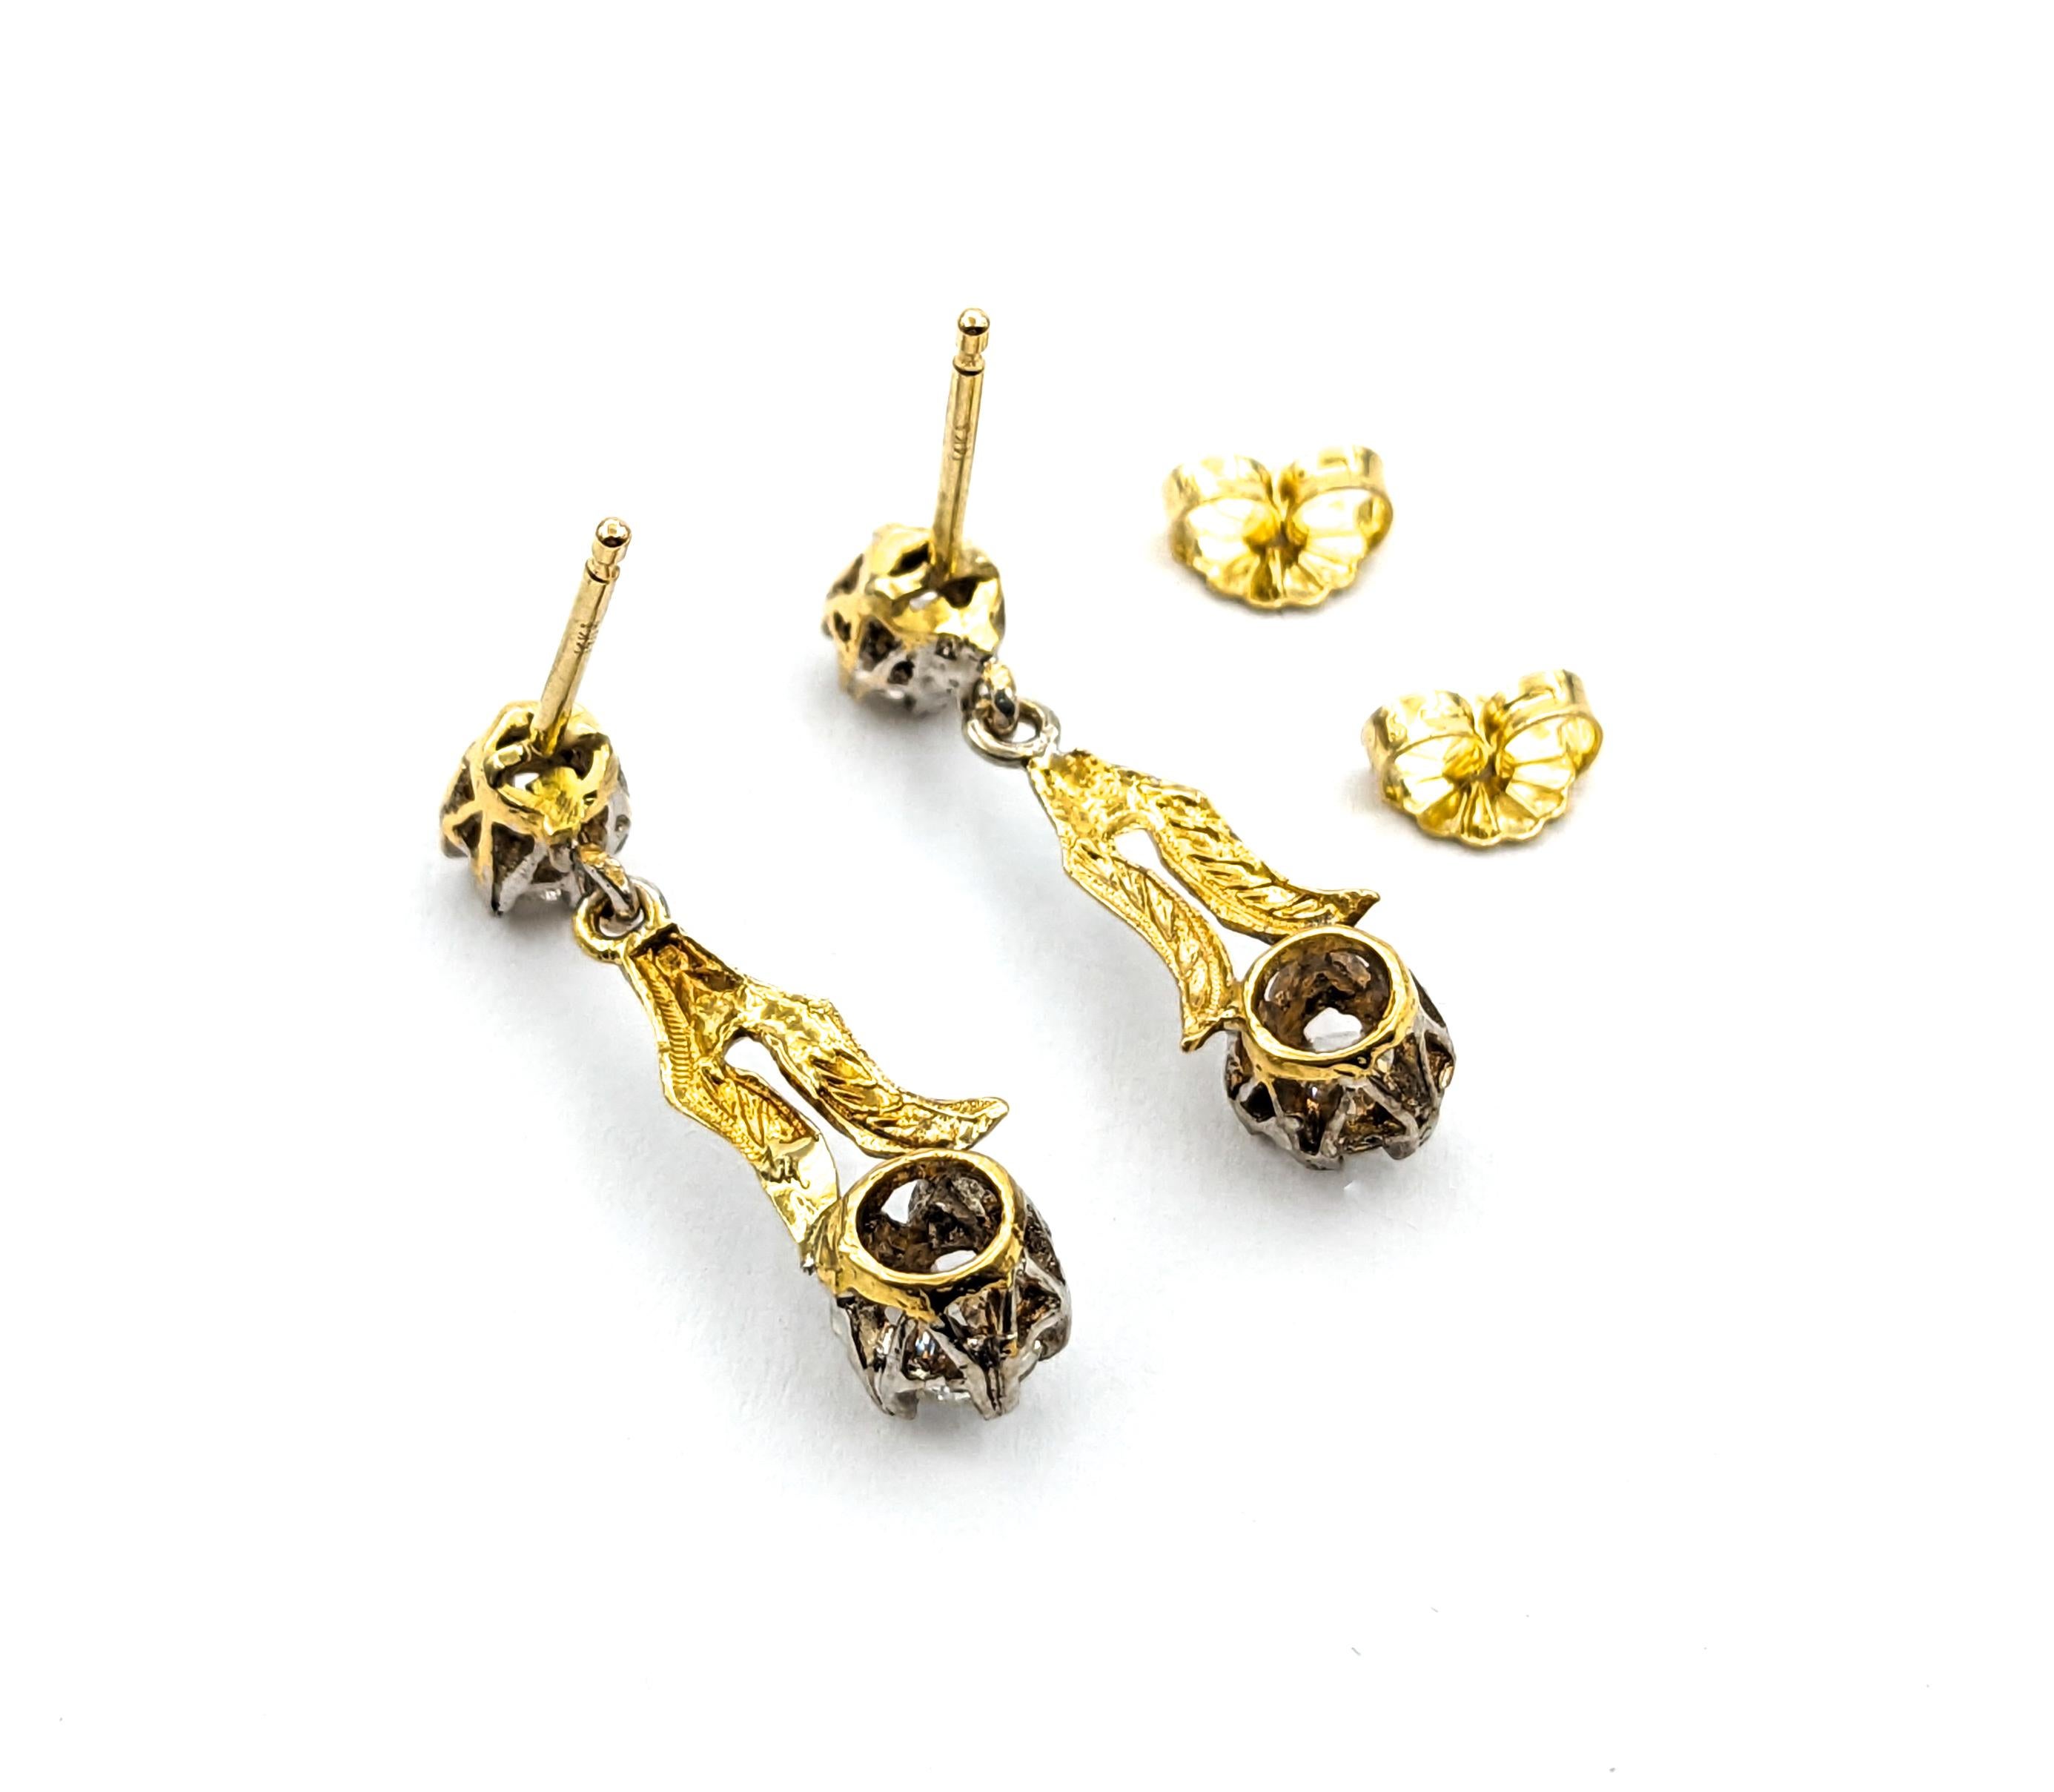 Diamant-Ohrringe Vintage Dangle In zweifarbigem Gold



Wir präsentieren ein Paar atemberaubende Vintage-Ohrringe, die in 14kt zweifarbigem Gold gefertigt sind. Diese eleganten Ohrringe sind mit 1,00 ct Diamanten besetzt und zelebrieren den